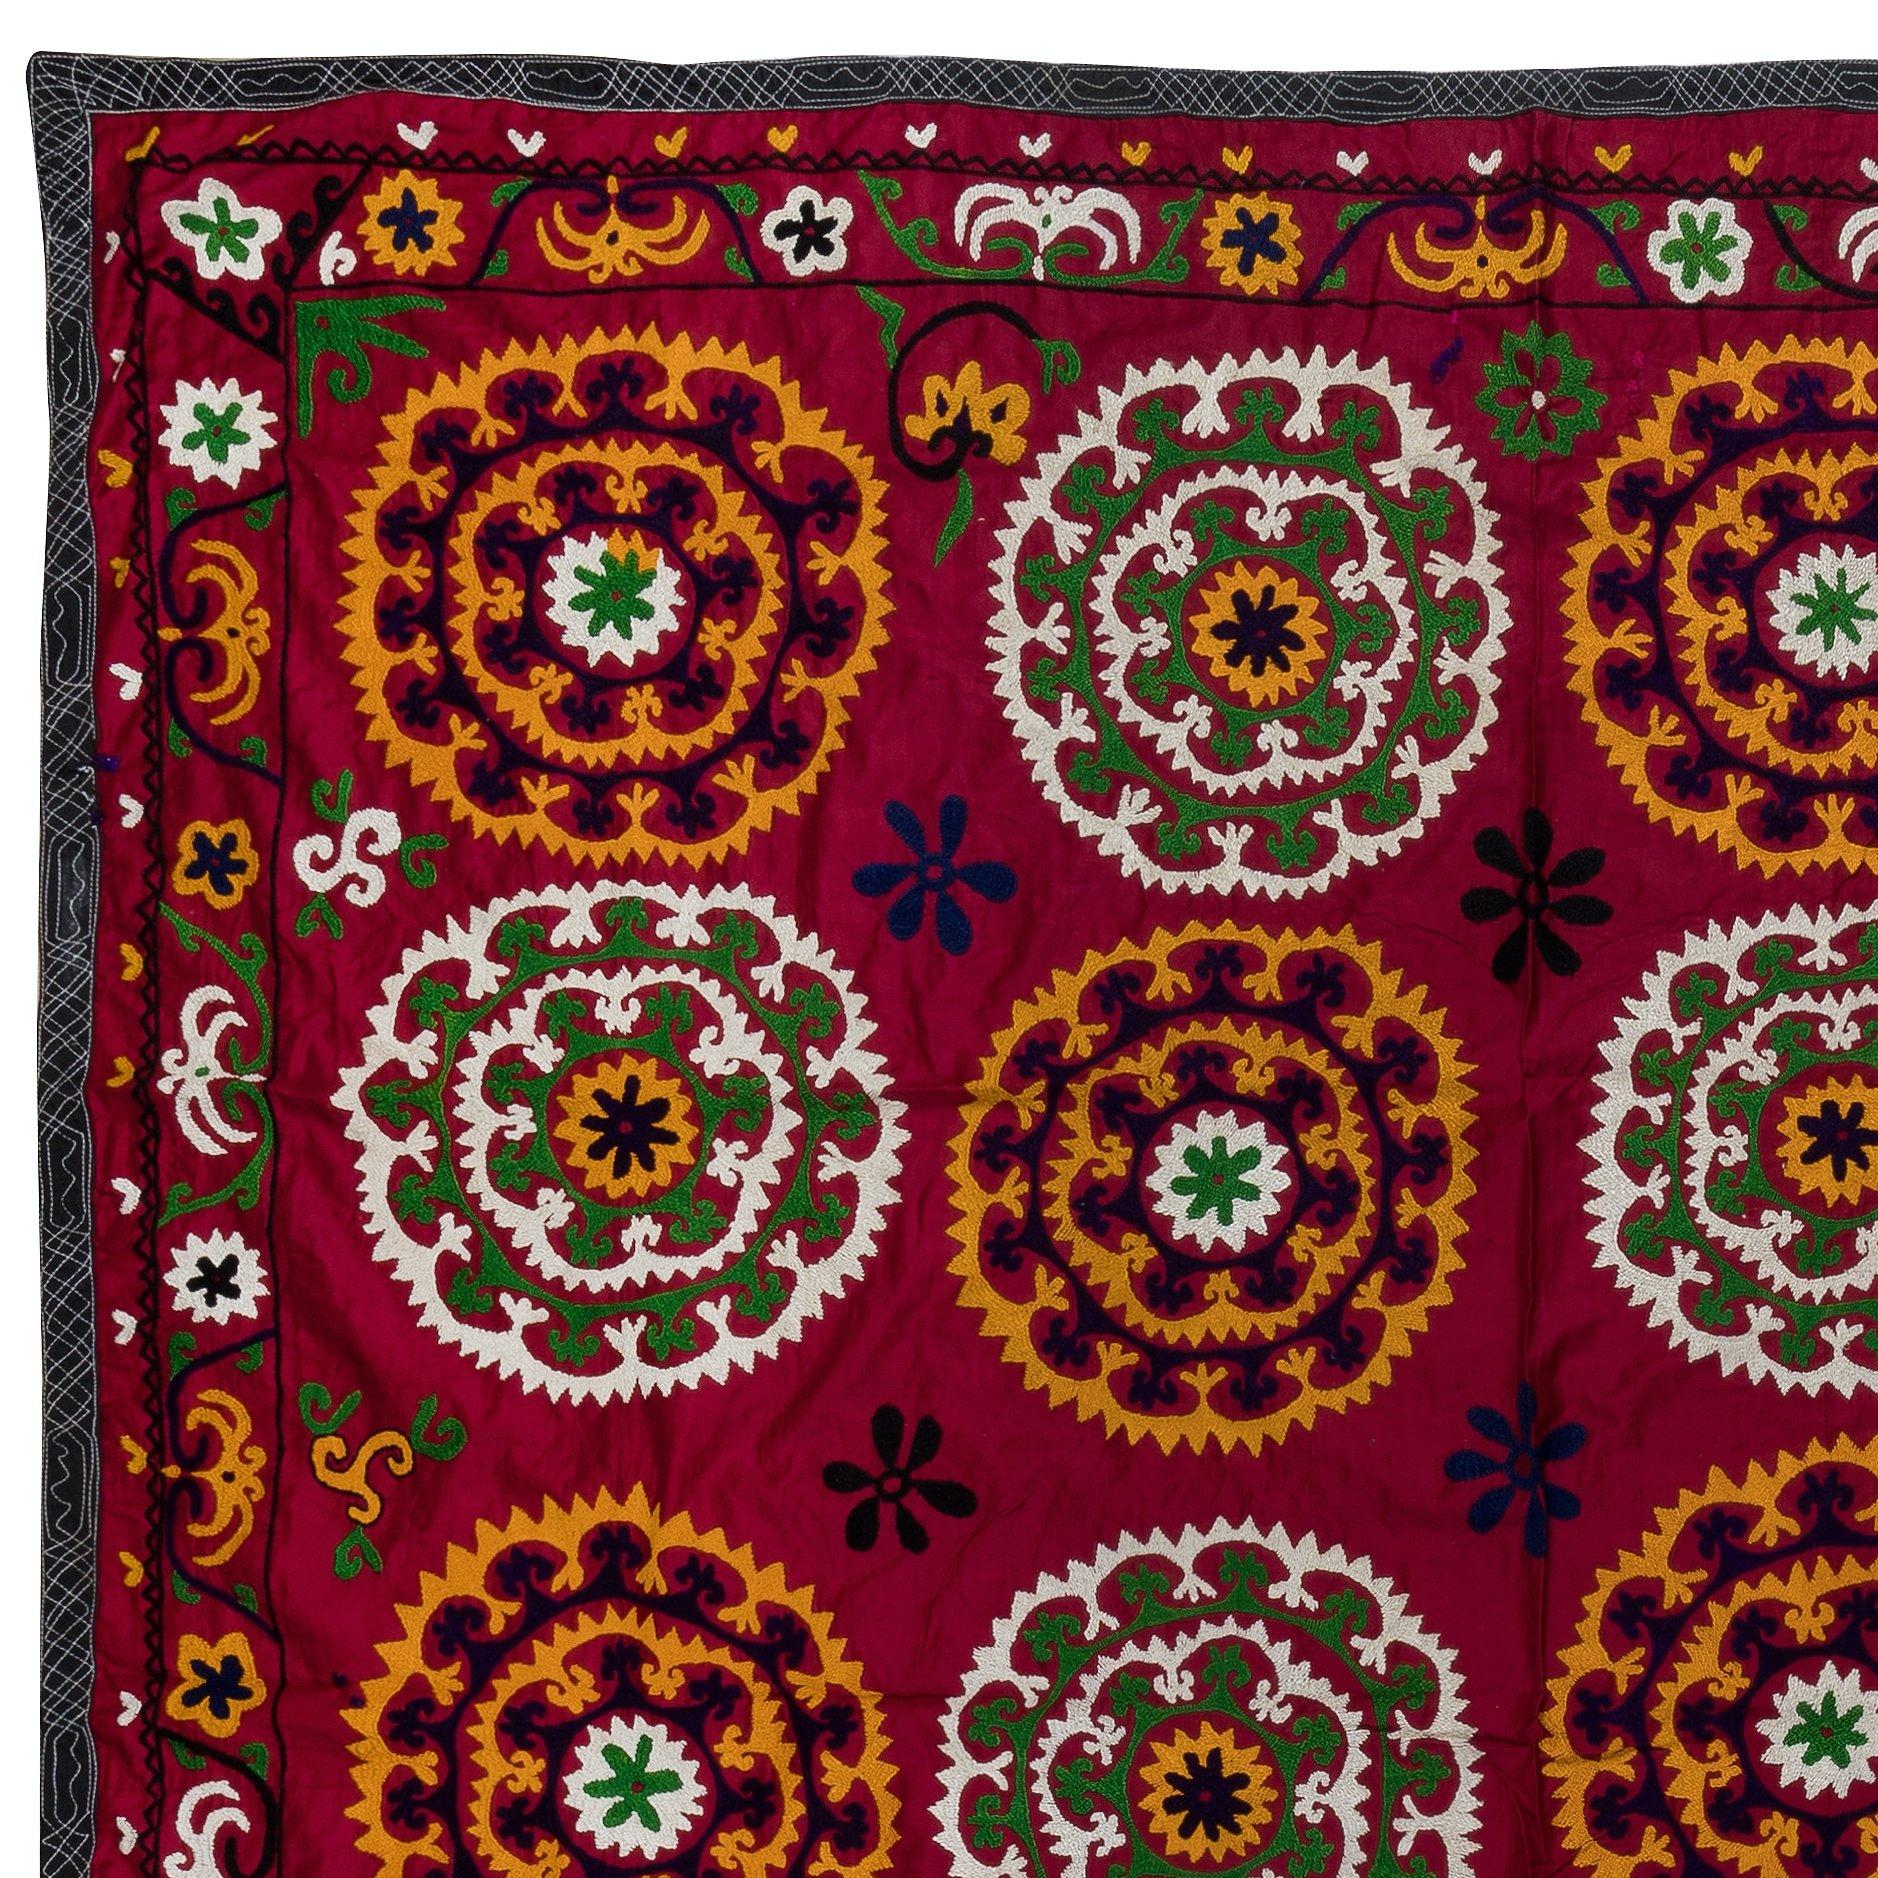 Tauchen Sie ein in die Welt der leuchtenden Farben und der aufwendigen Handwerkskunst mit unserem usbekischen Suzani Wandbehang oder Bettbezug aus handgestickter Seide. Dieses atemberaubende Stück ist perfekt, um Ihrer Einrichtung einen Hauch von